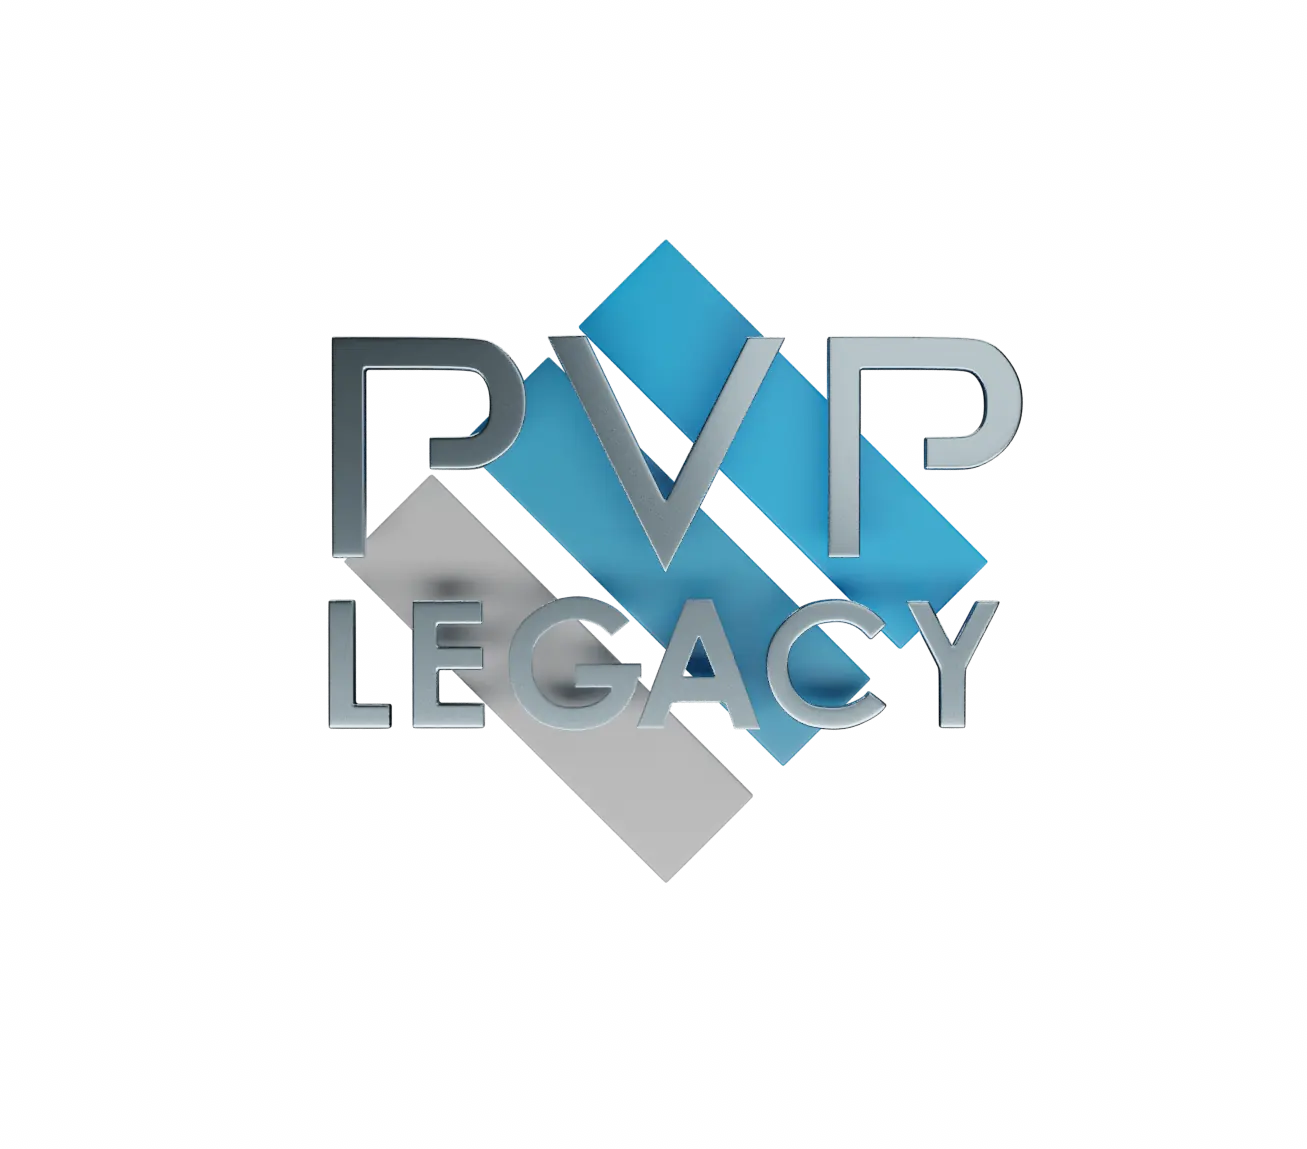 PVP Legacy